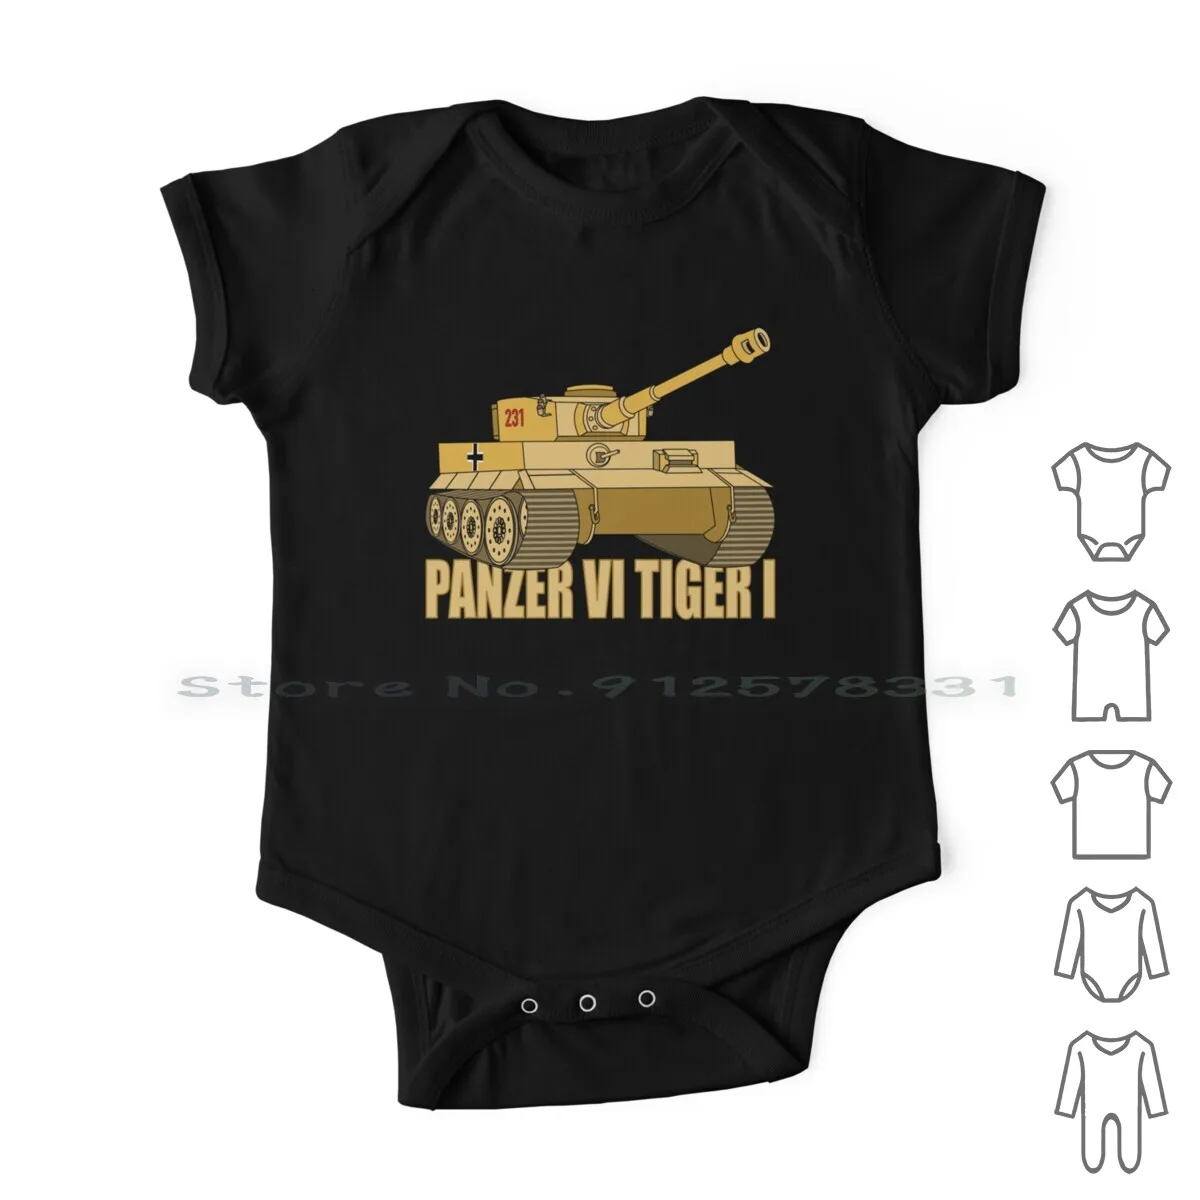 

Танк Panzer Vi Tiger I в подарок, немецкие армейские майки Ww2, Одежда для новорожденных, комбинезоны, хлопковые комбинезоны, армейский Танк Ww2, Германия, вторая